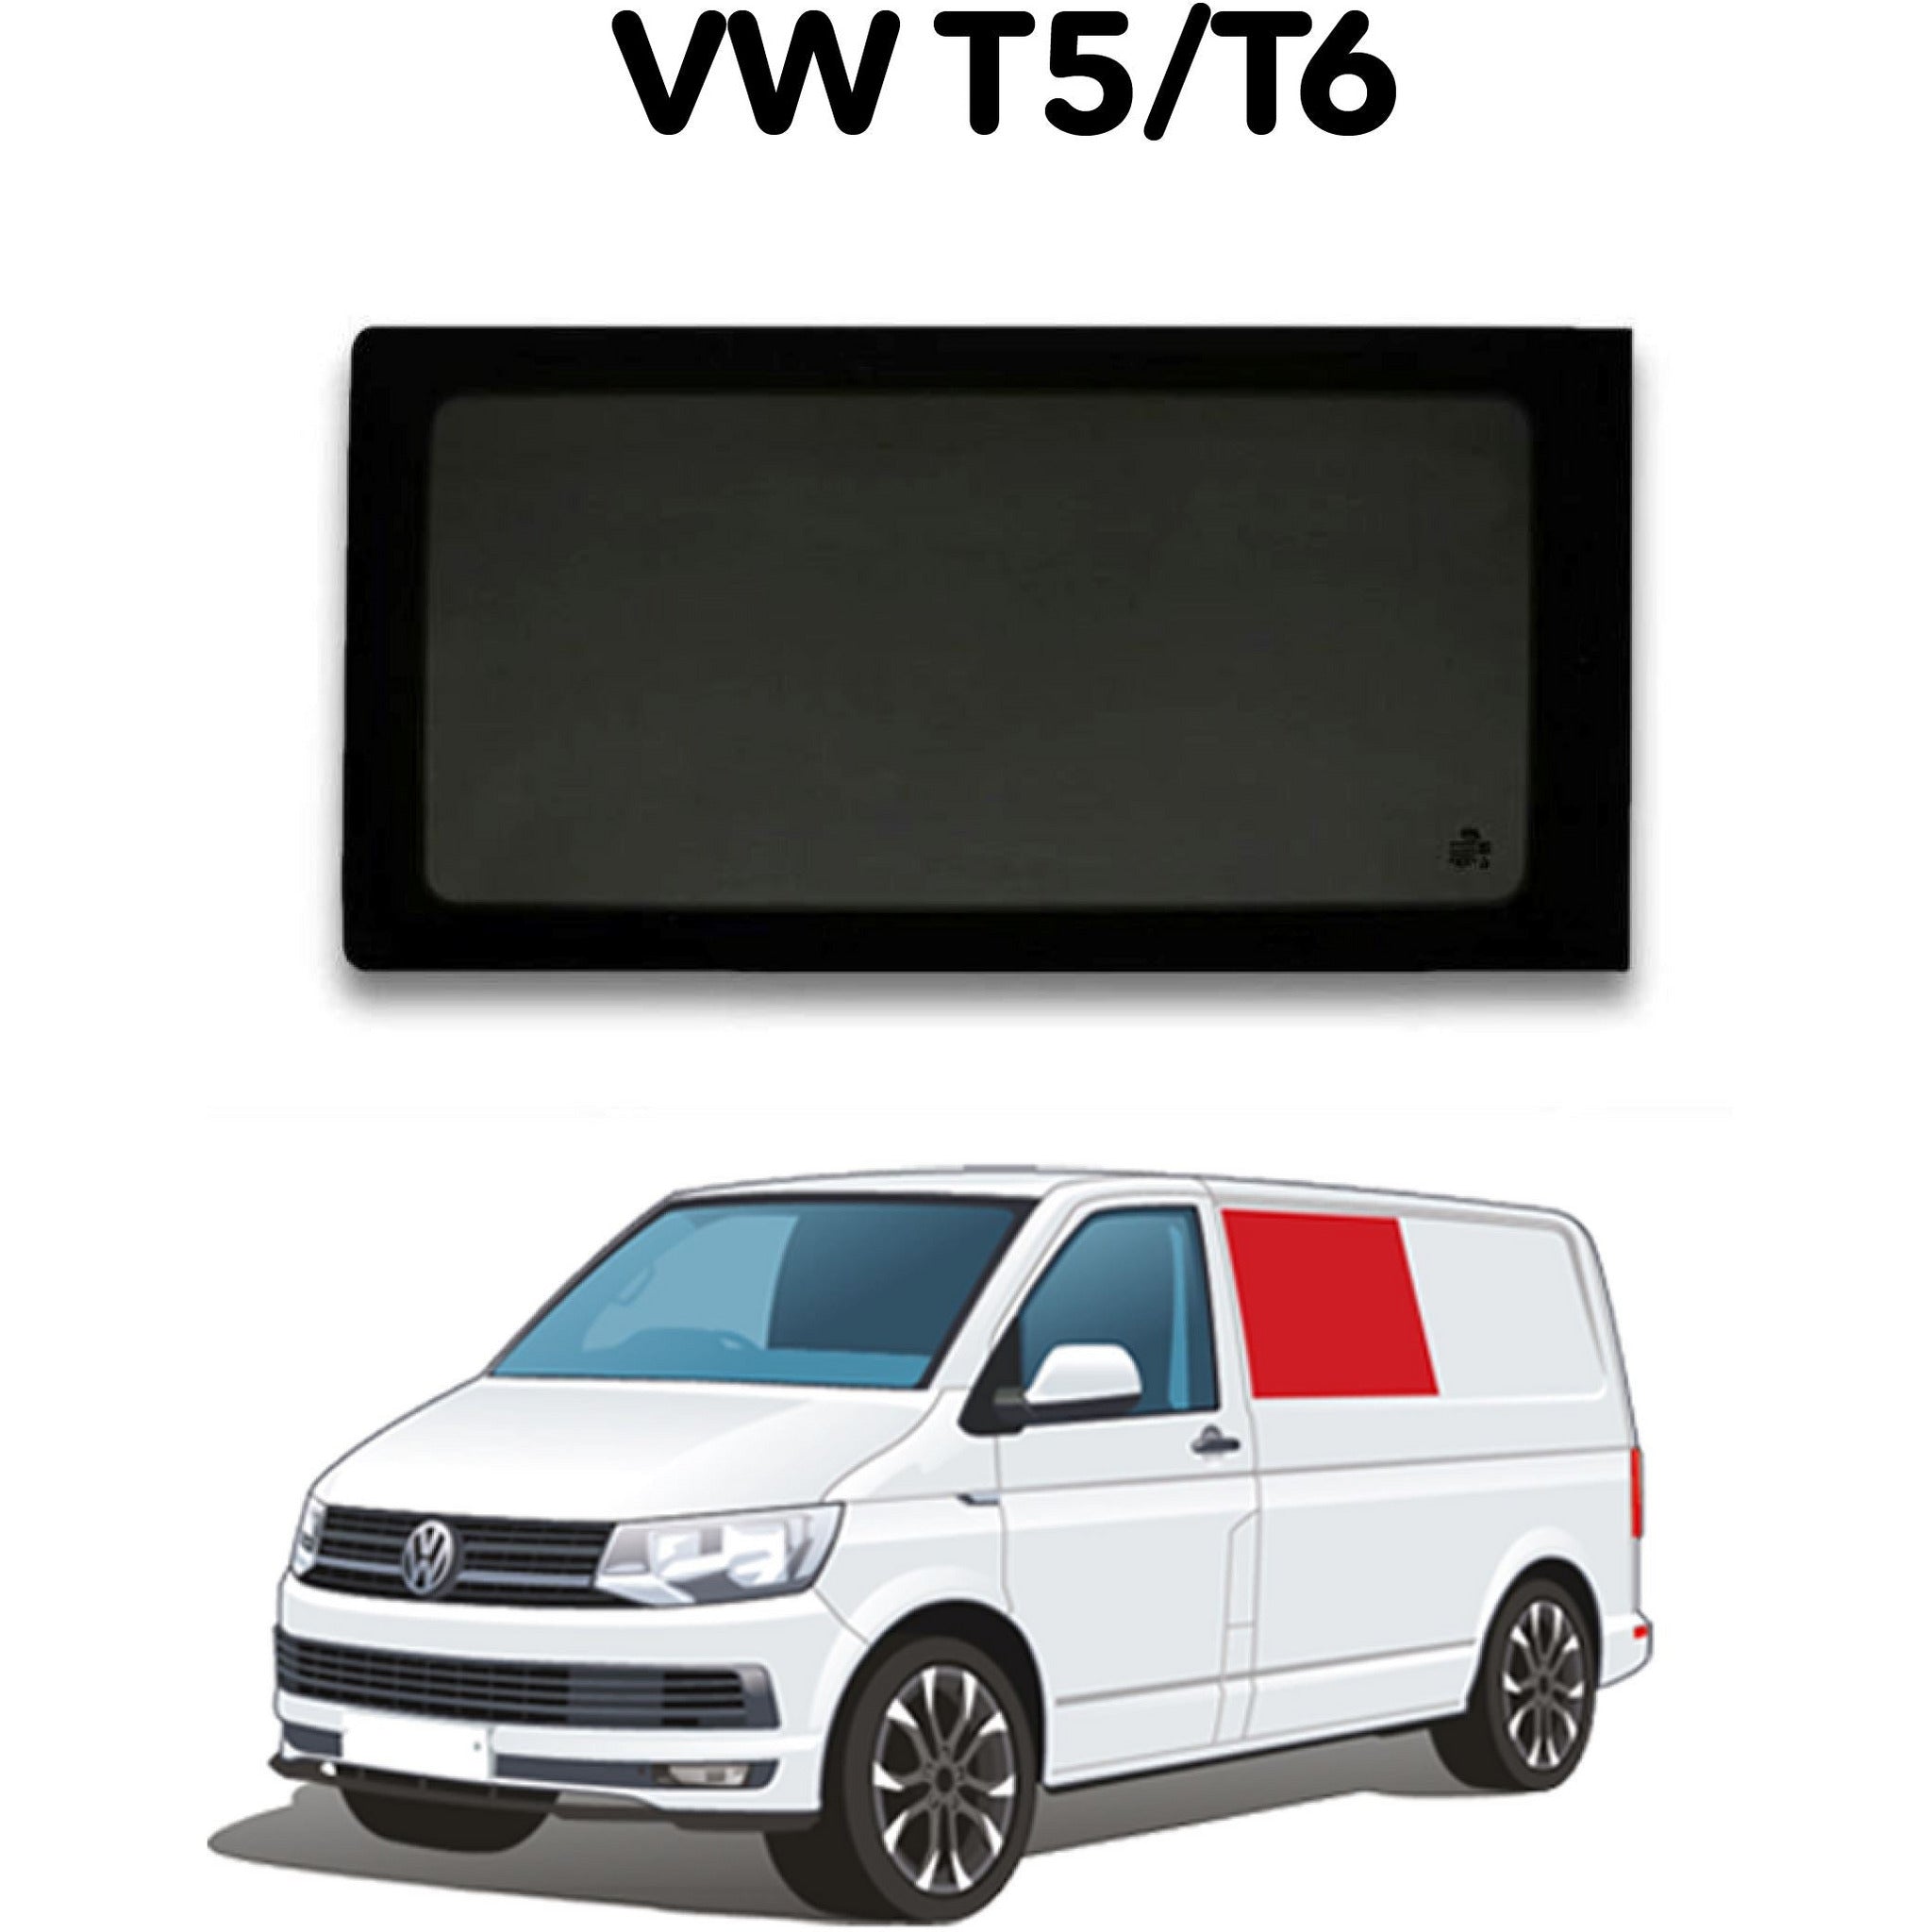 Left Fixed Window VW T5 / T6 - Non-sliding door Camper Glass by Kiravans 